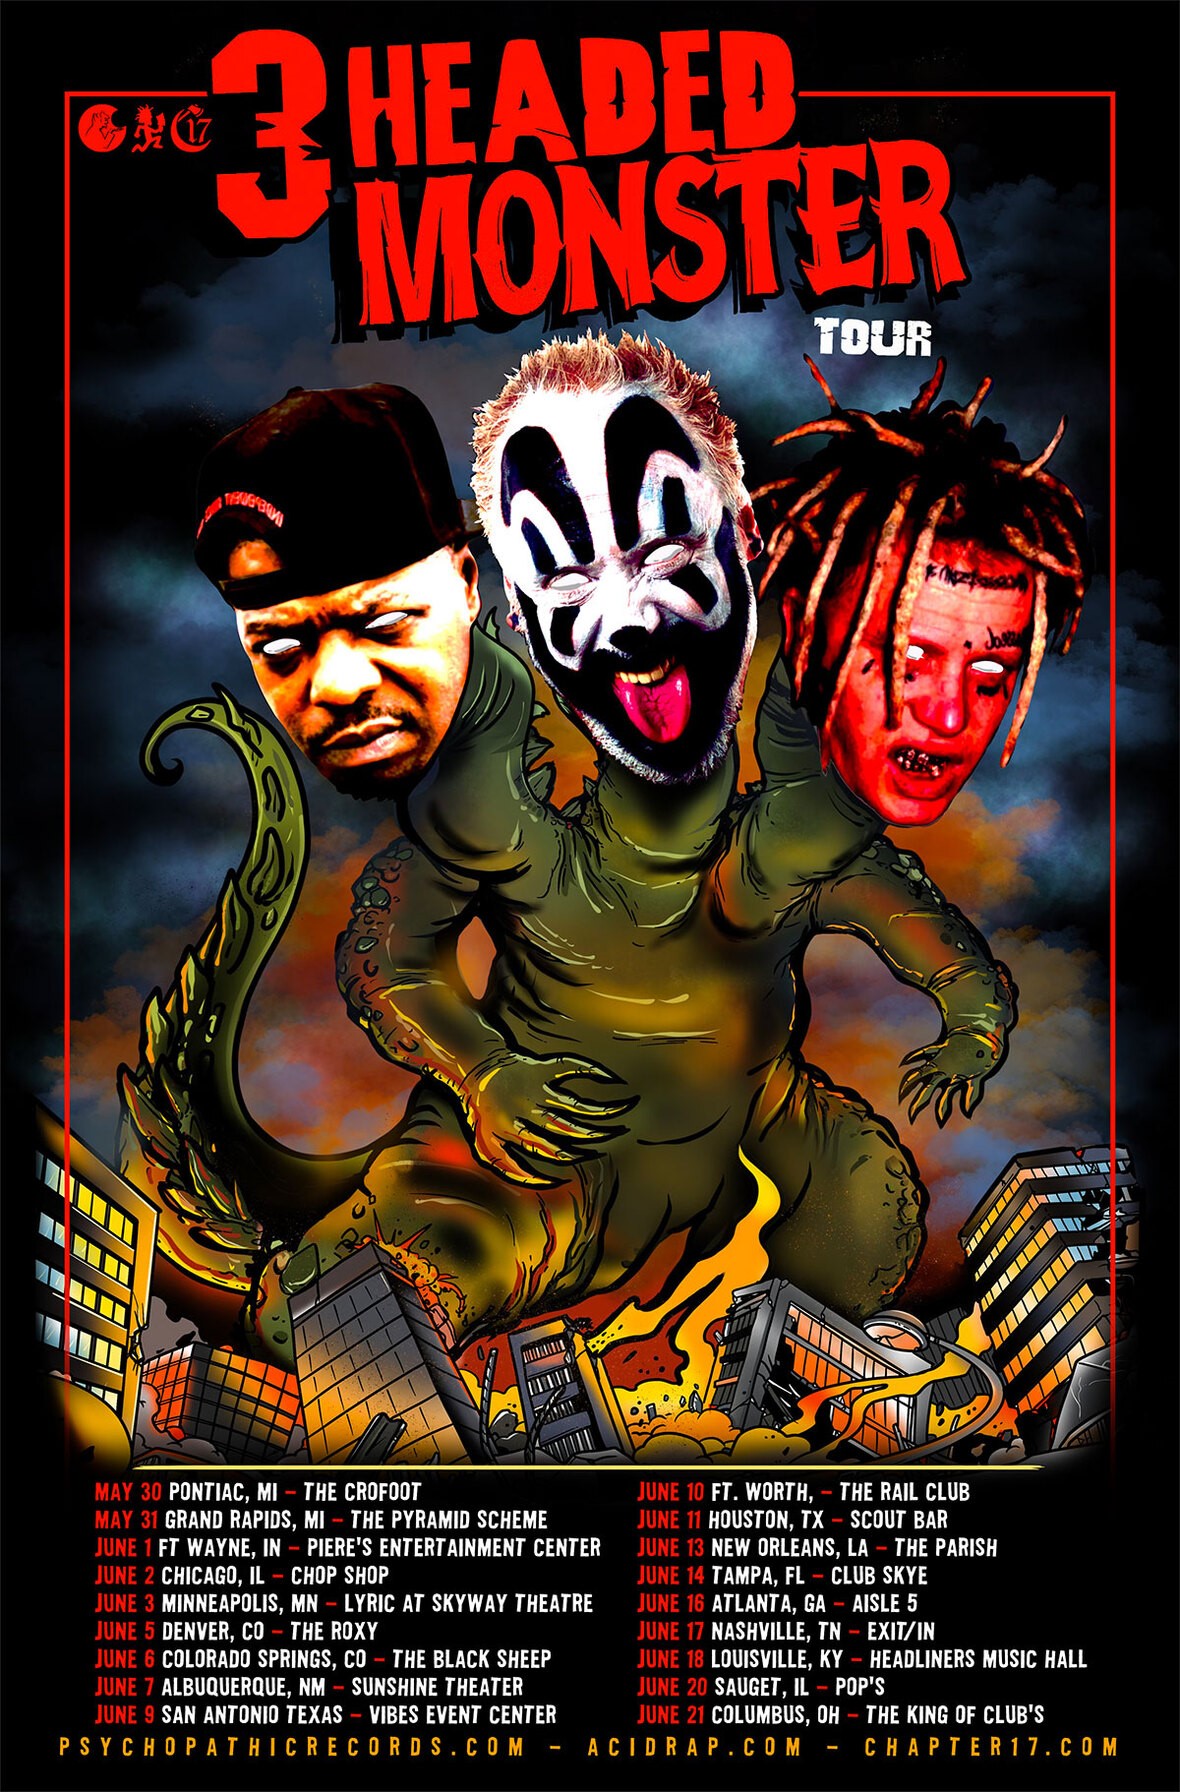 VIOLENT J (Insane Clown Posse) Announces the 3 Headed Monster Tour